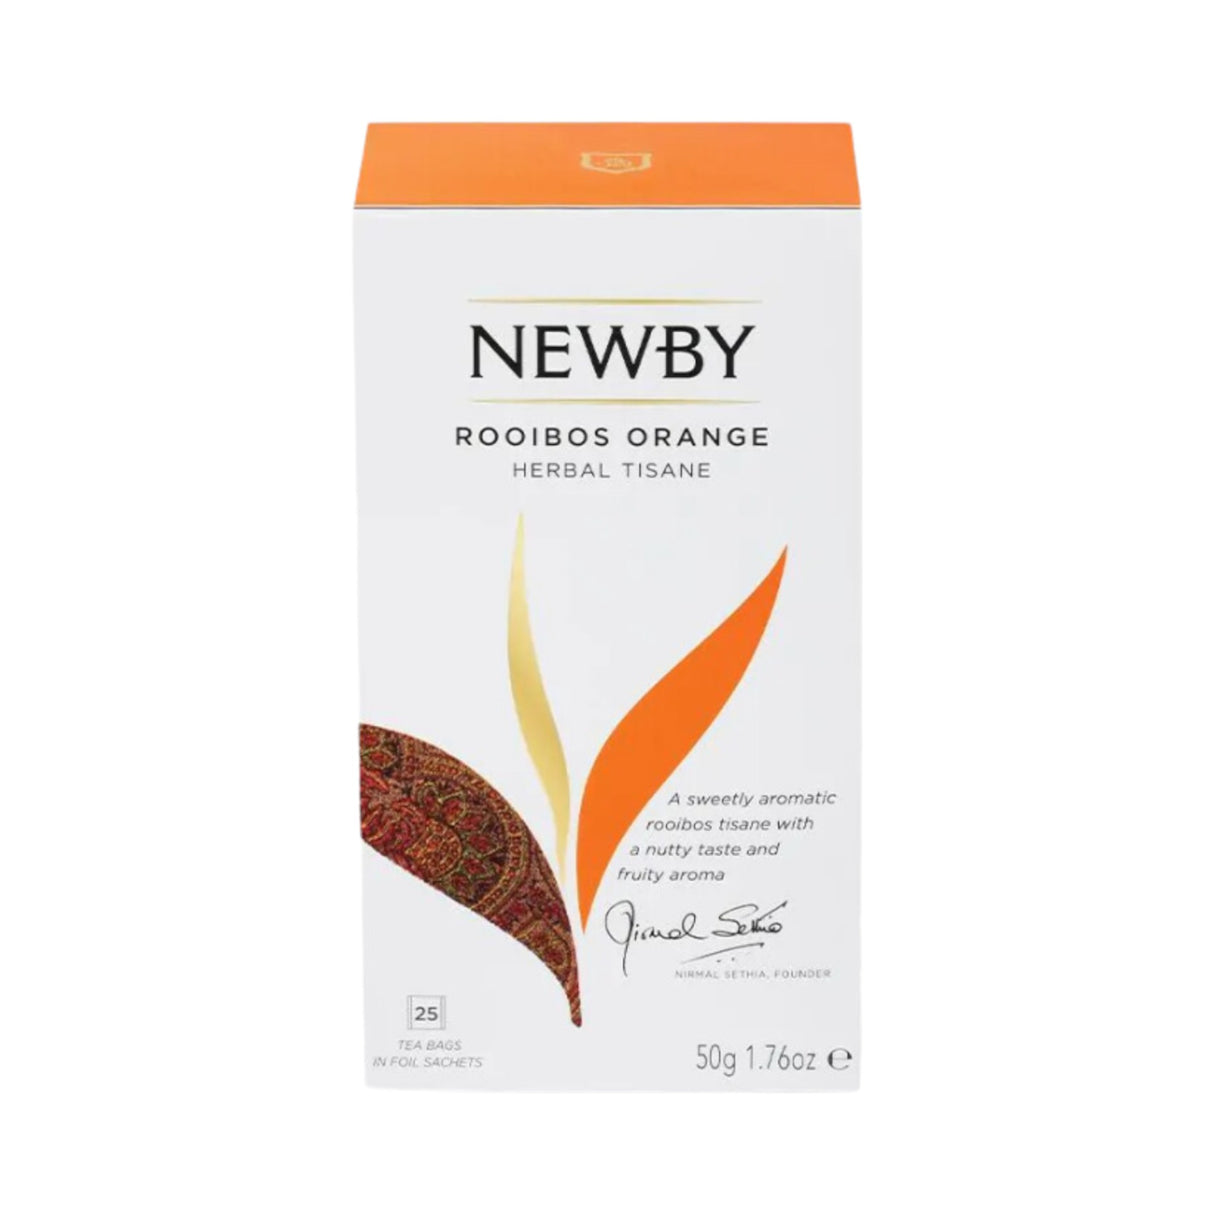 Newby Teas - ROOIBOS ORANGE Teabags 25 Count